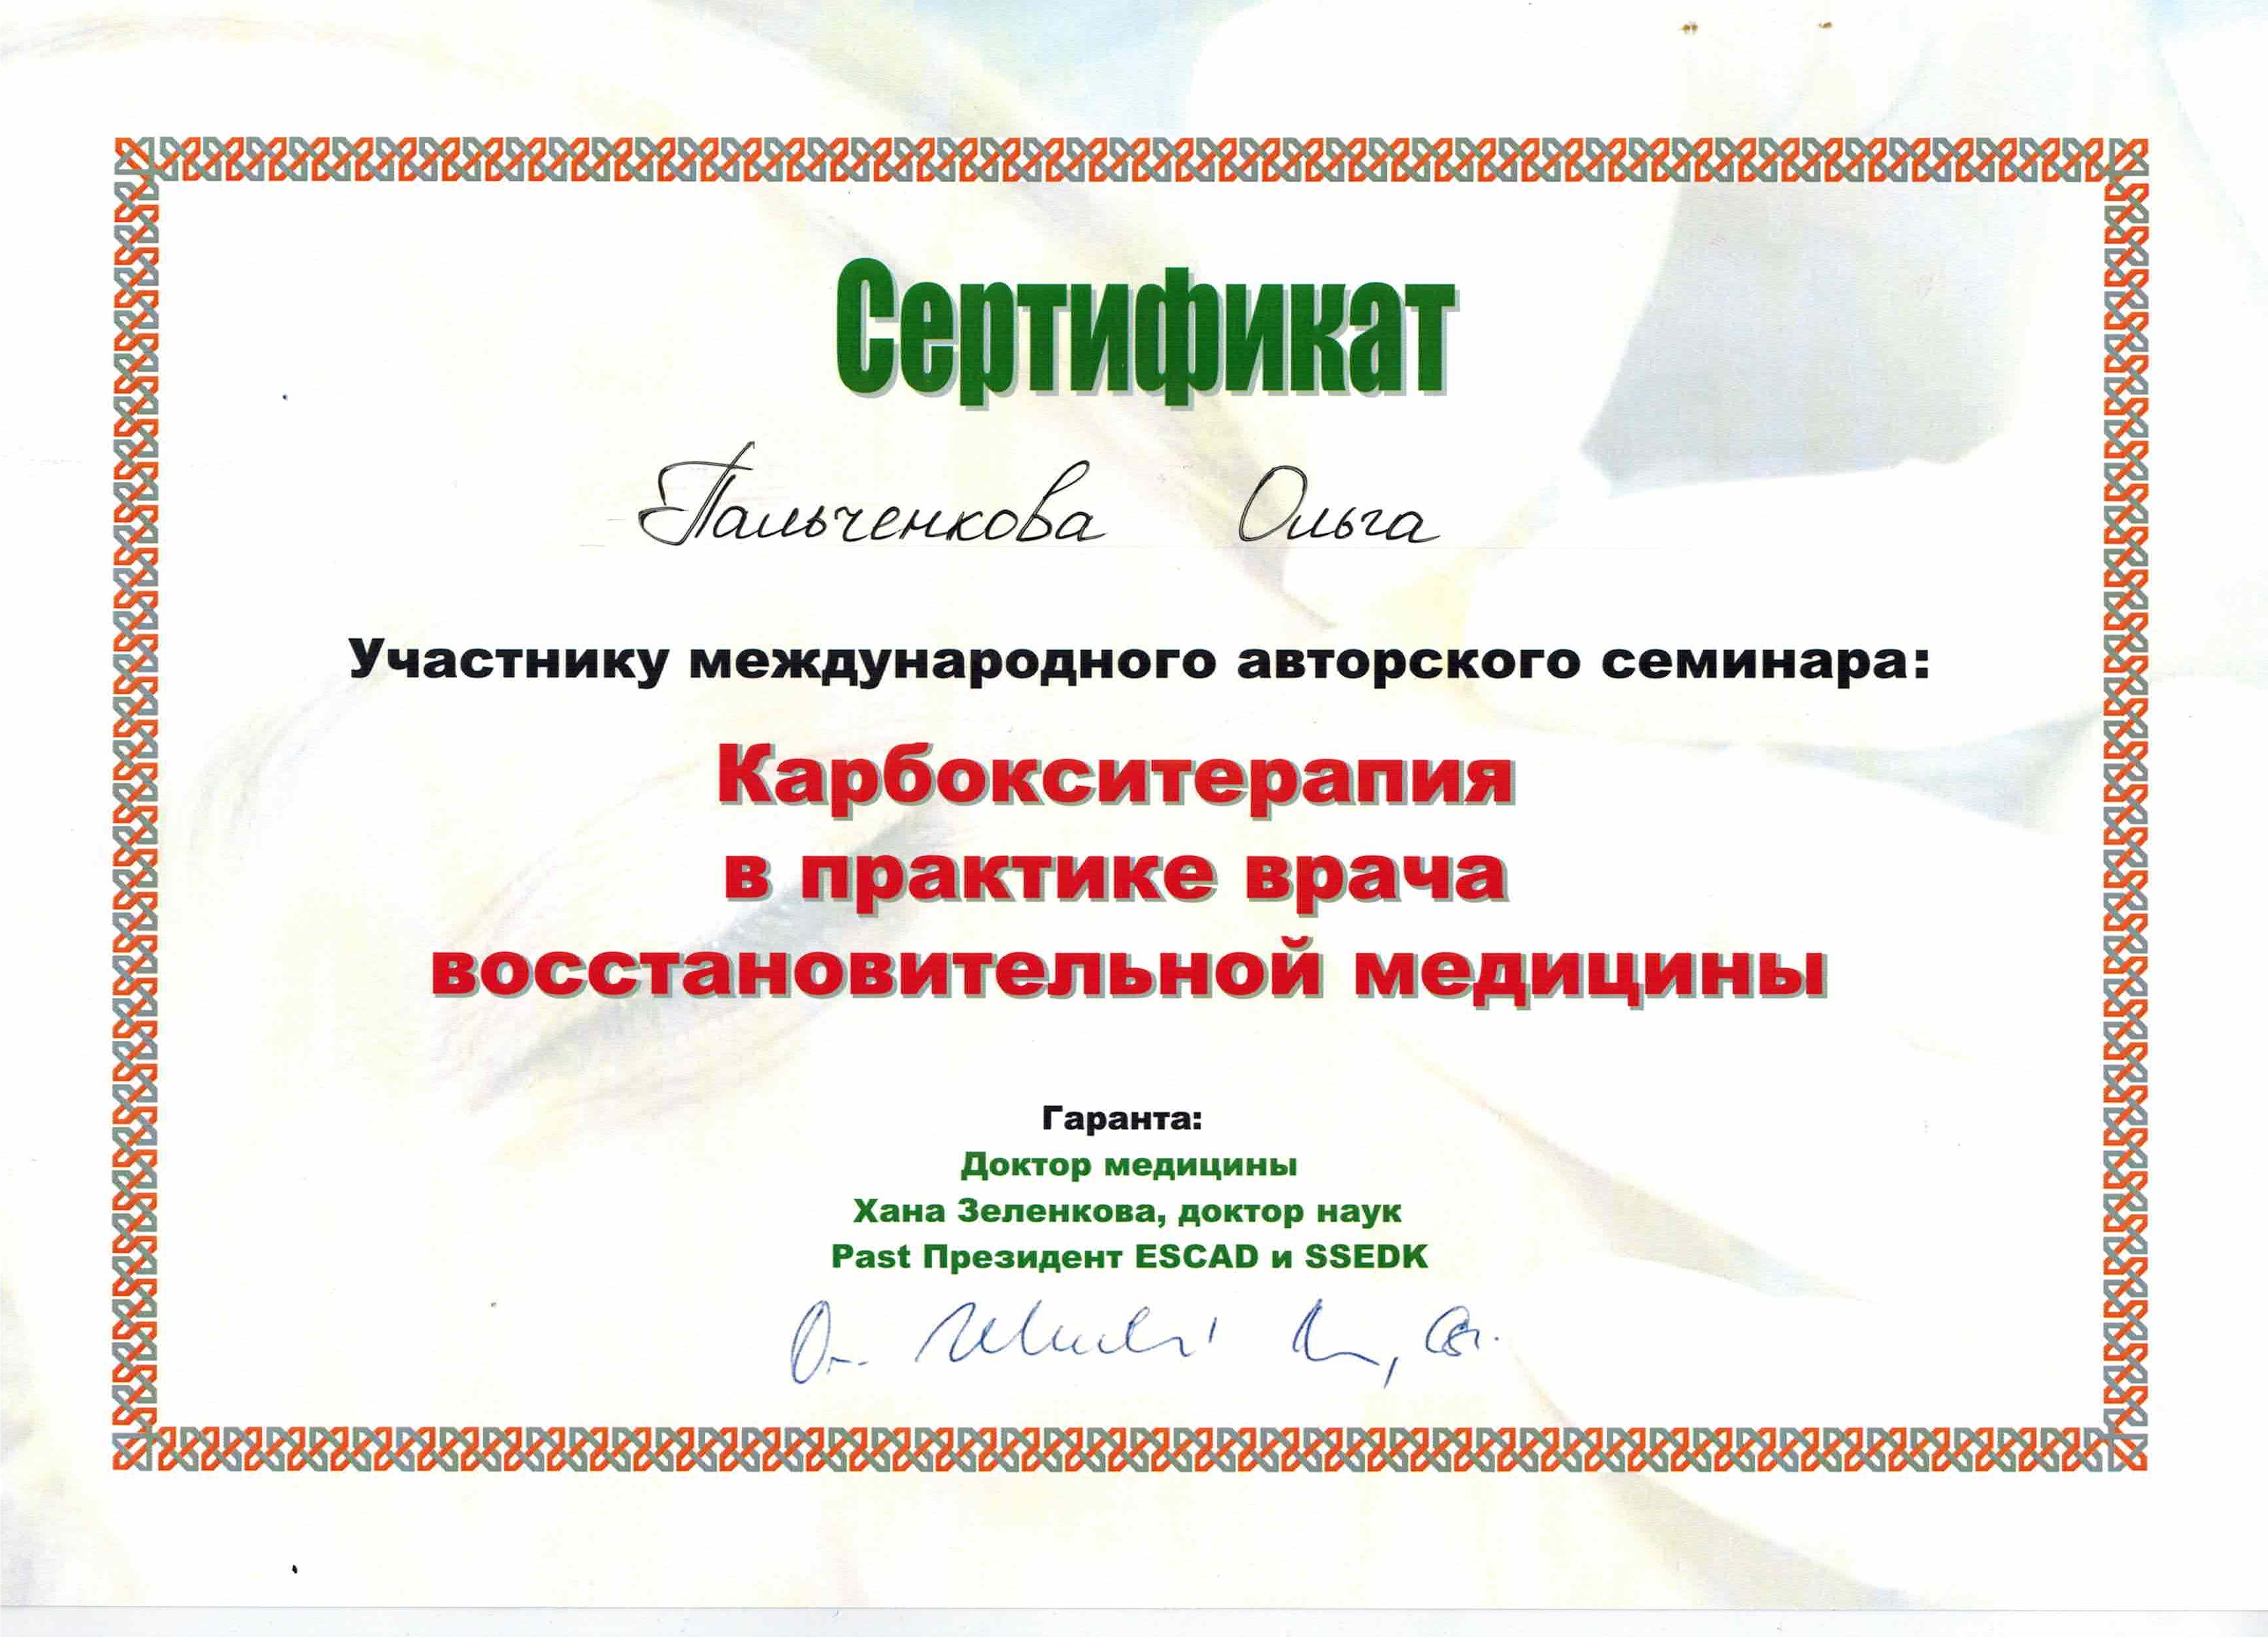 Для обслуживания международного семинара 12000. Сертификат на корбокси терпию. Зеленкова карбокситерапия. Подарочный сертификат на корбокси терпию.